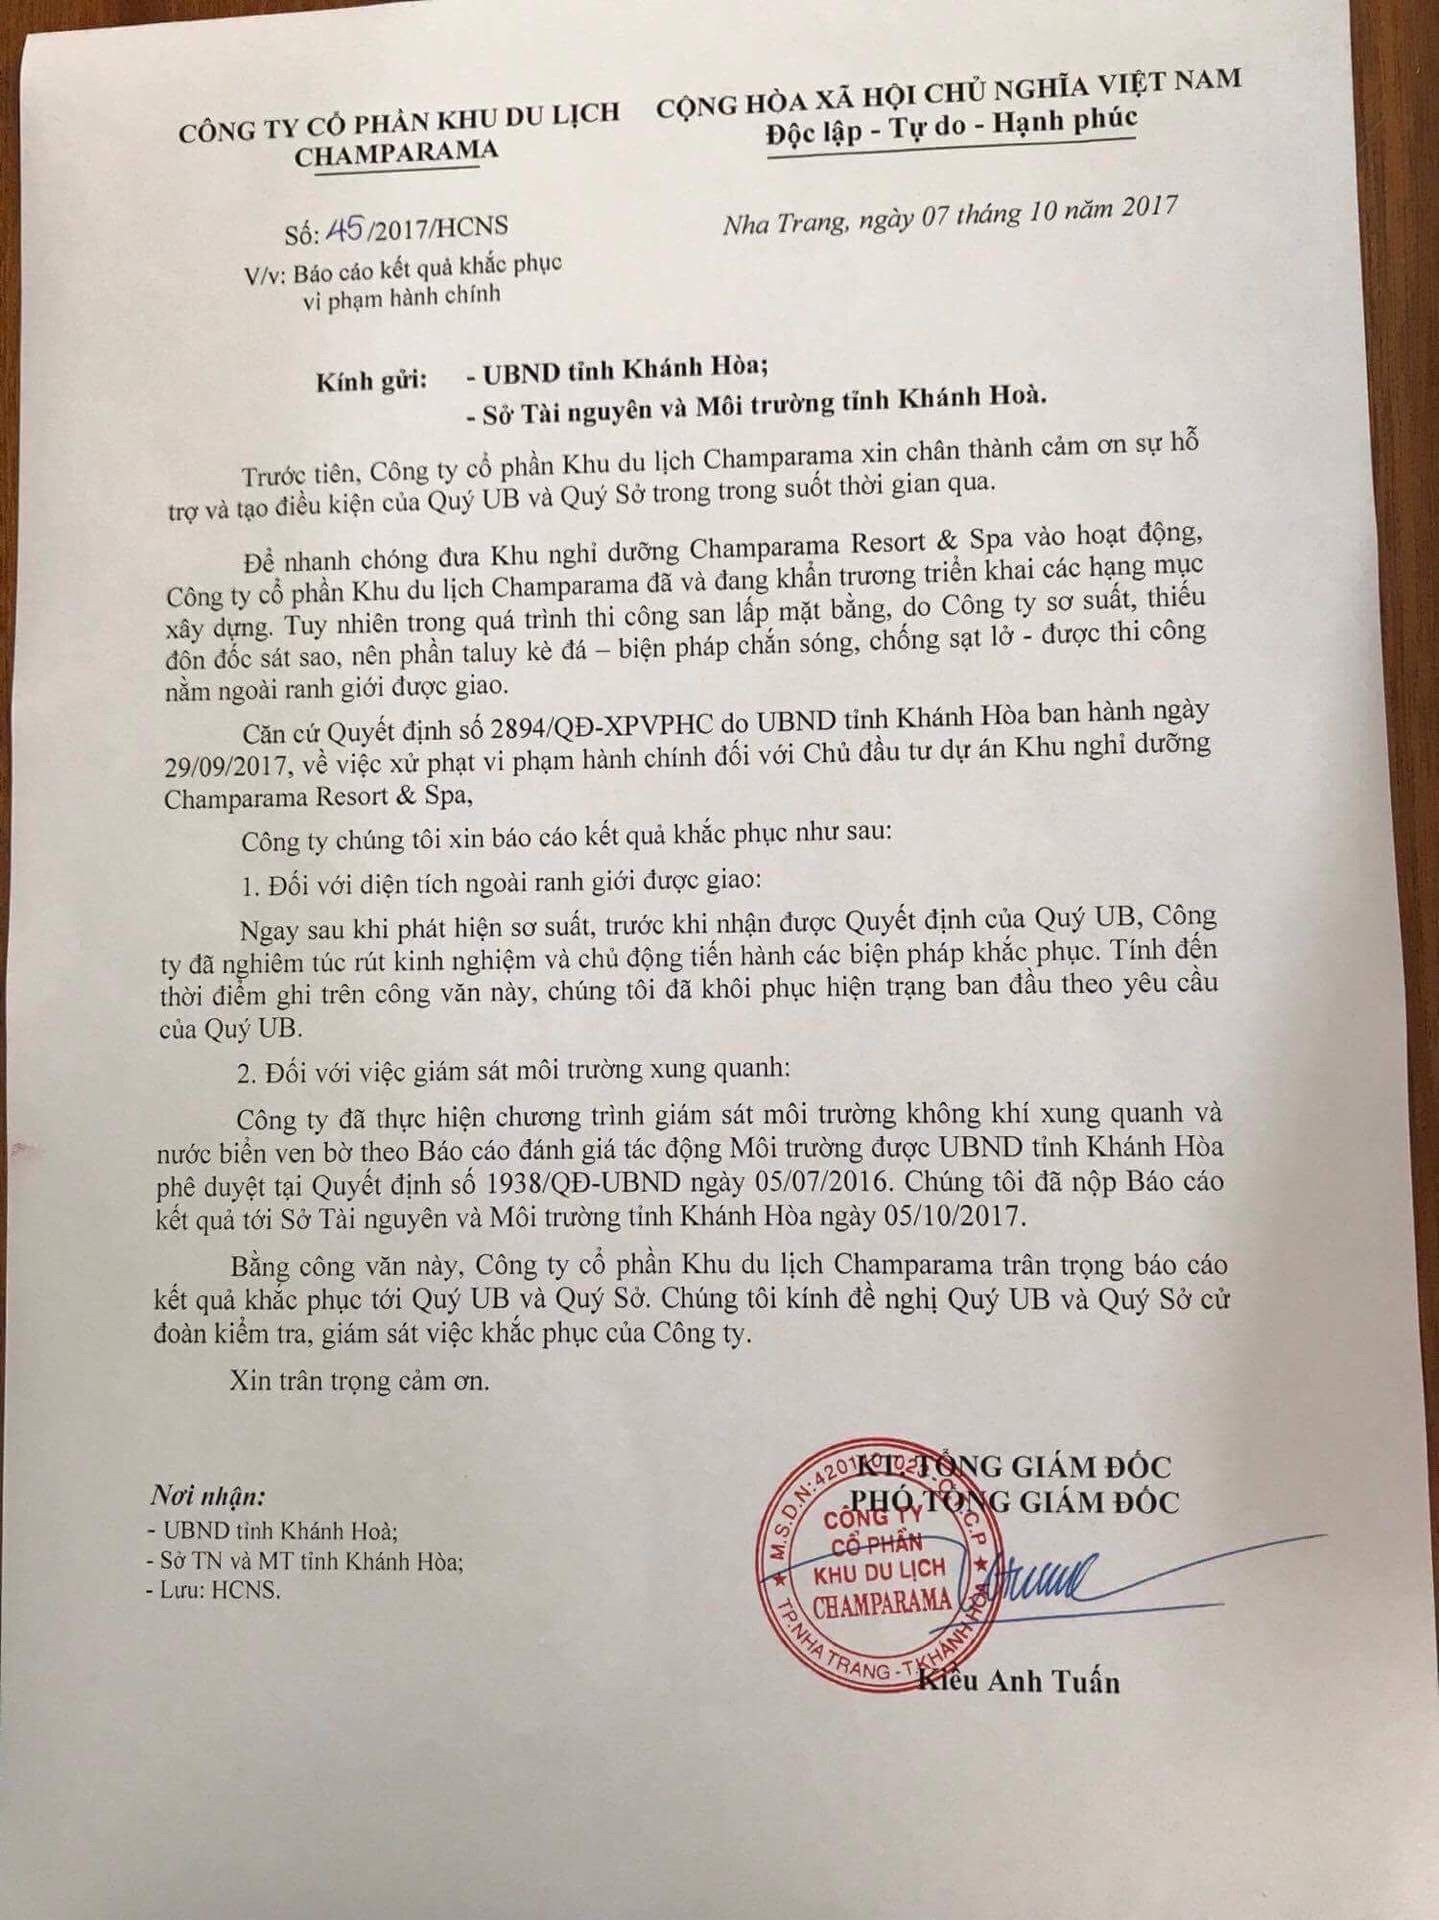 Công văn của công ty Champarama gửi UBND tỉnh Khánh Hòa và Sở TNMT.